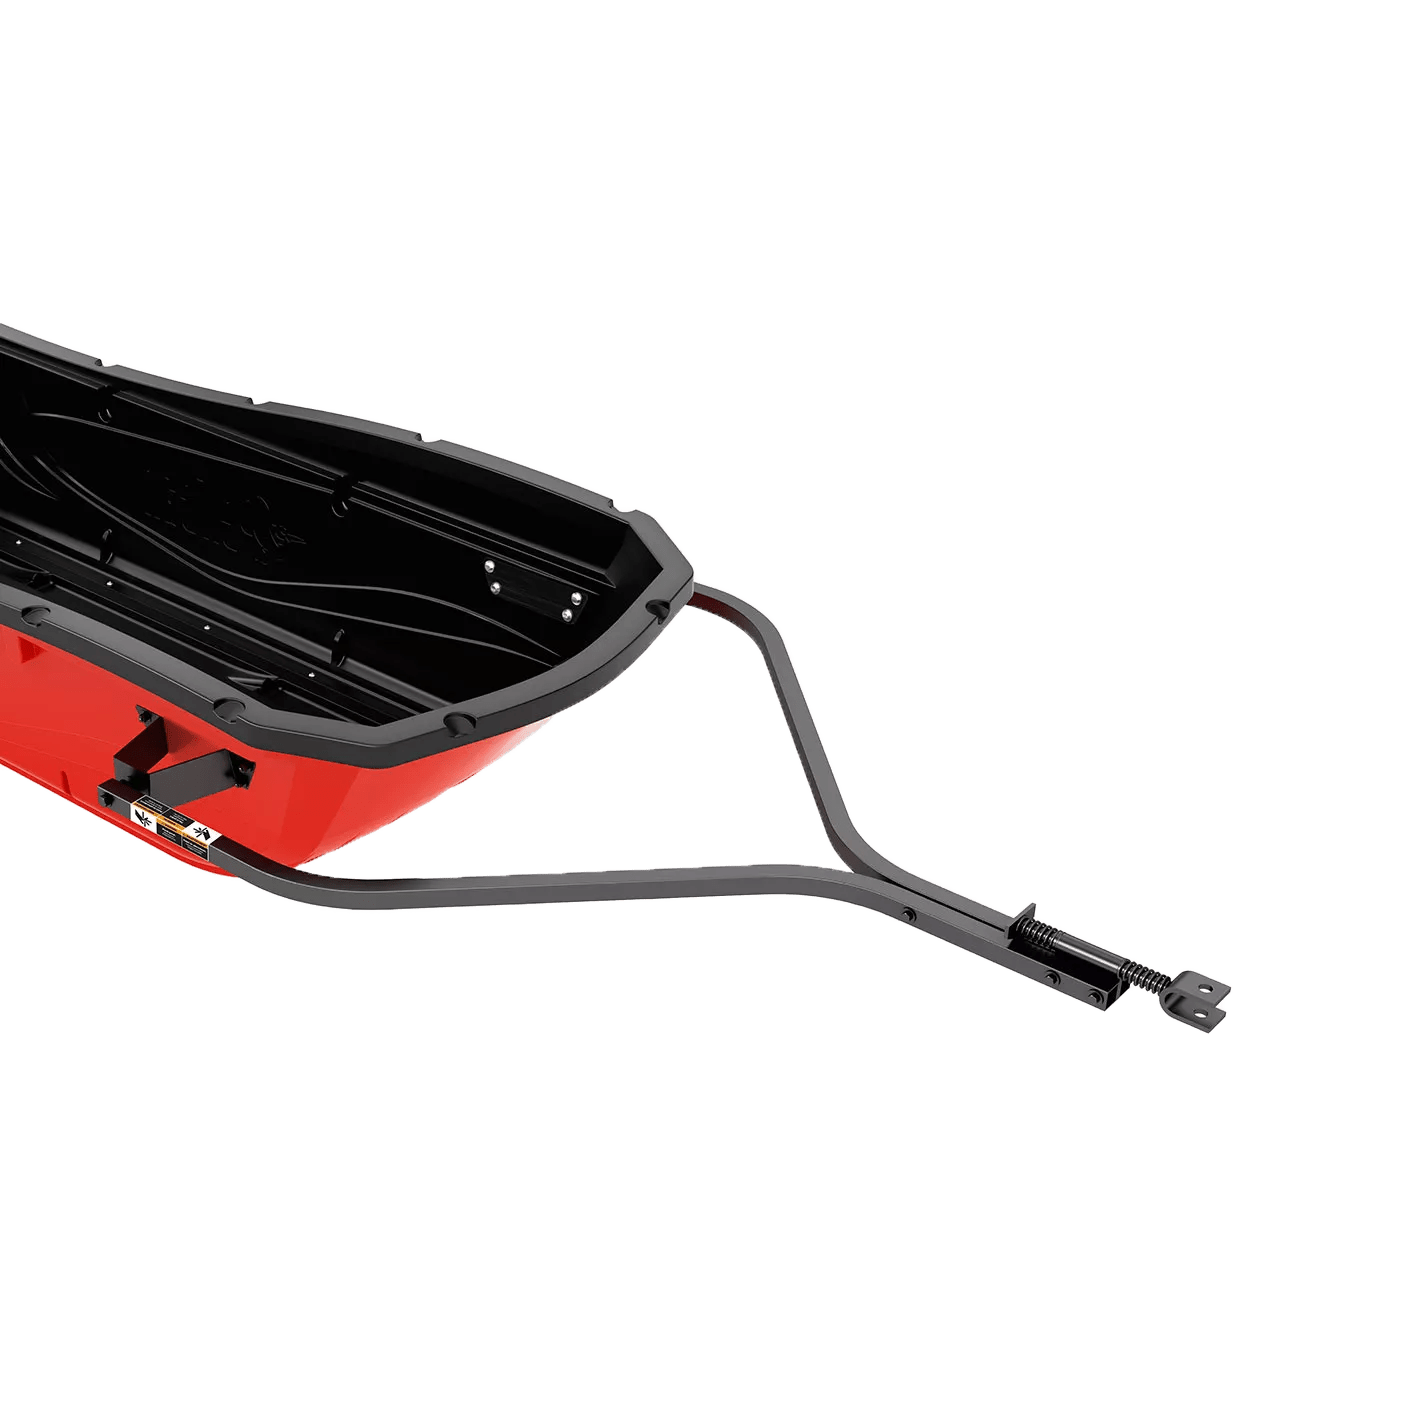 PELICAN - Attelage de remorque pour les luges utilitaires Trek Sport 68 ou 75 - Black - PS2164 - ISO 